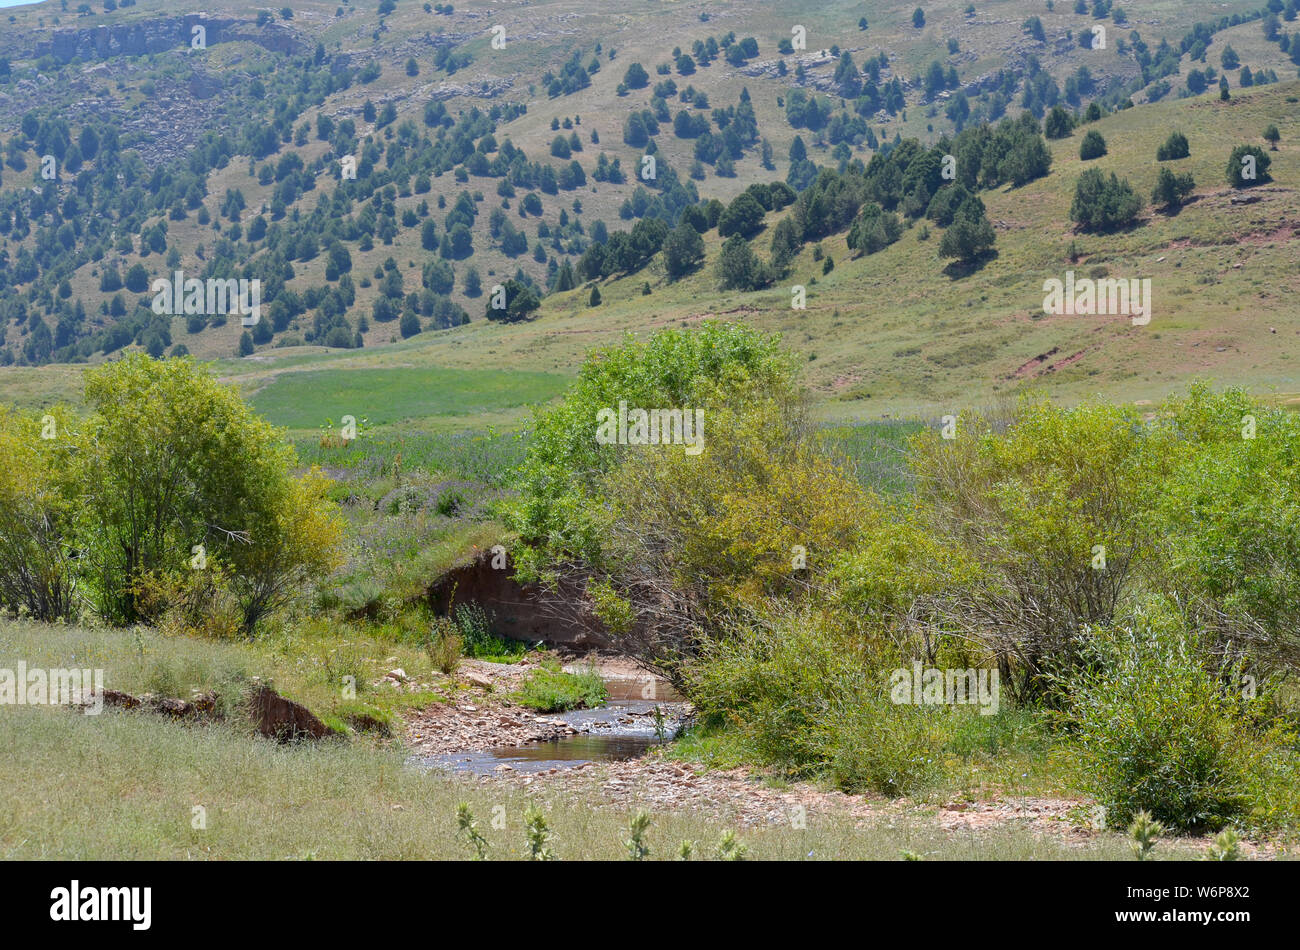 Hissar mountains, Pamir-Alay range, southeastern Uzbekistan Stock Photo